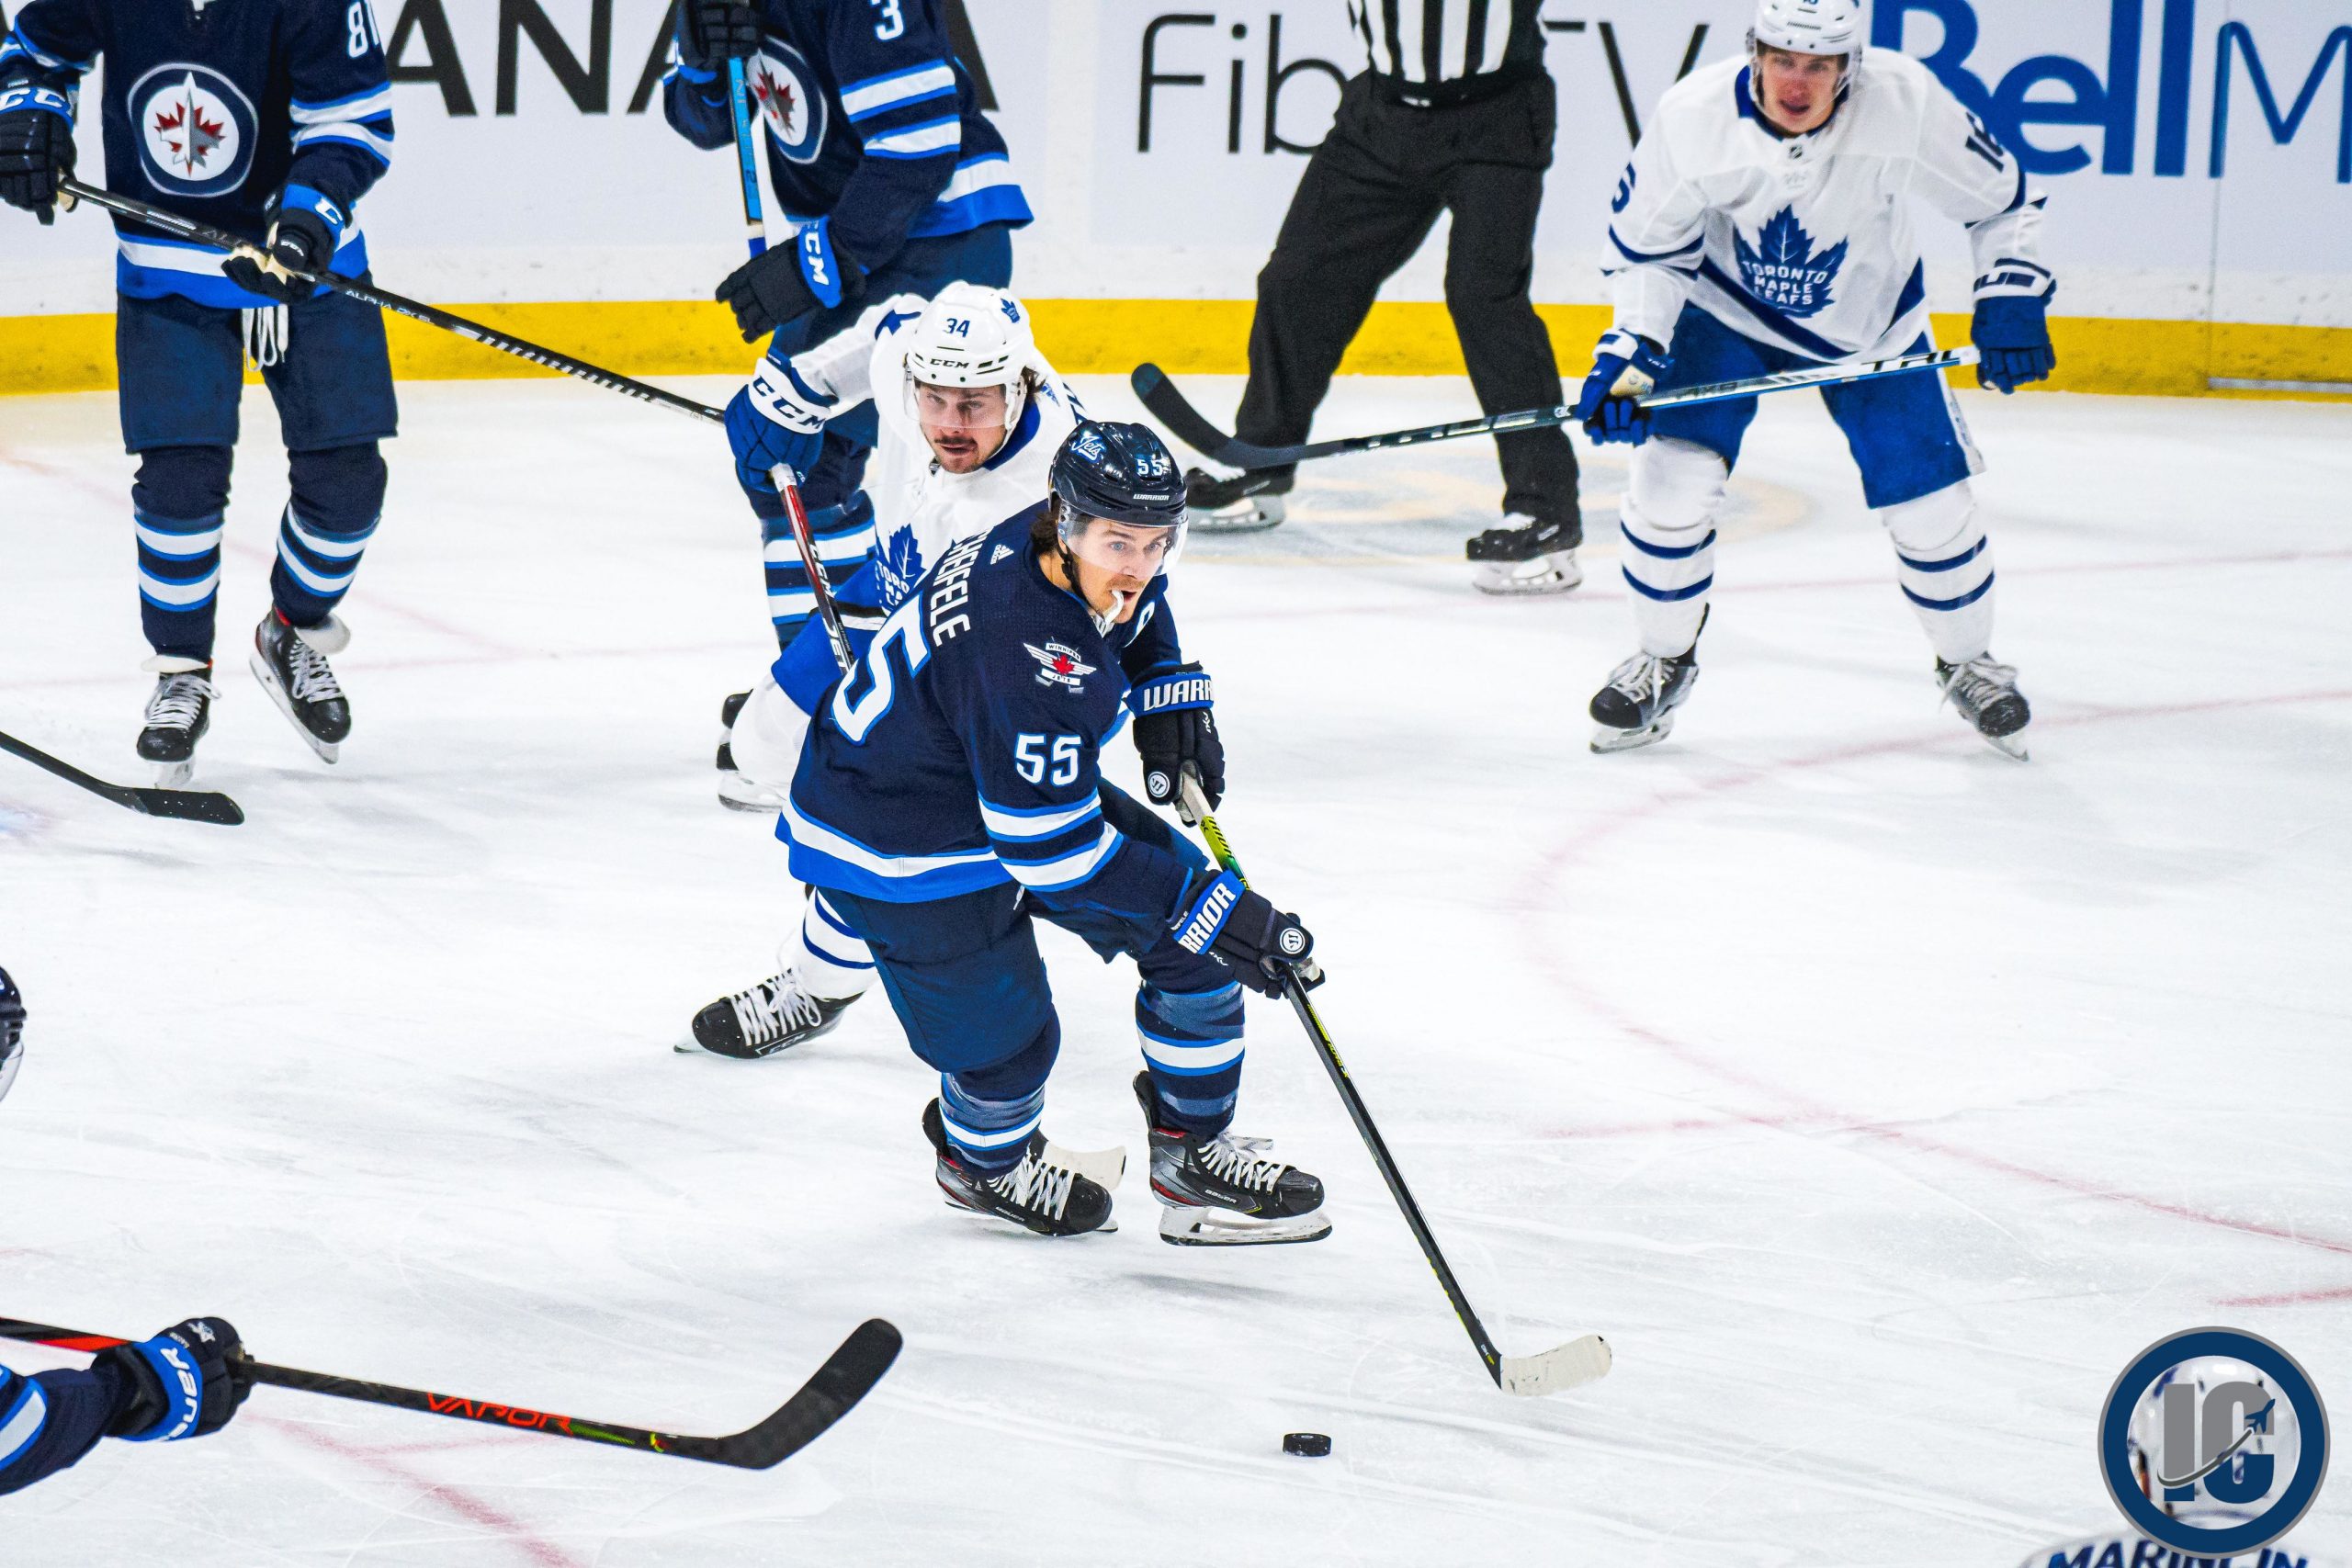 Scheifele heads up ice vs Leafs scaled